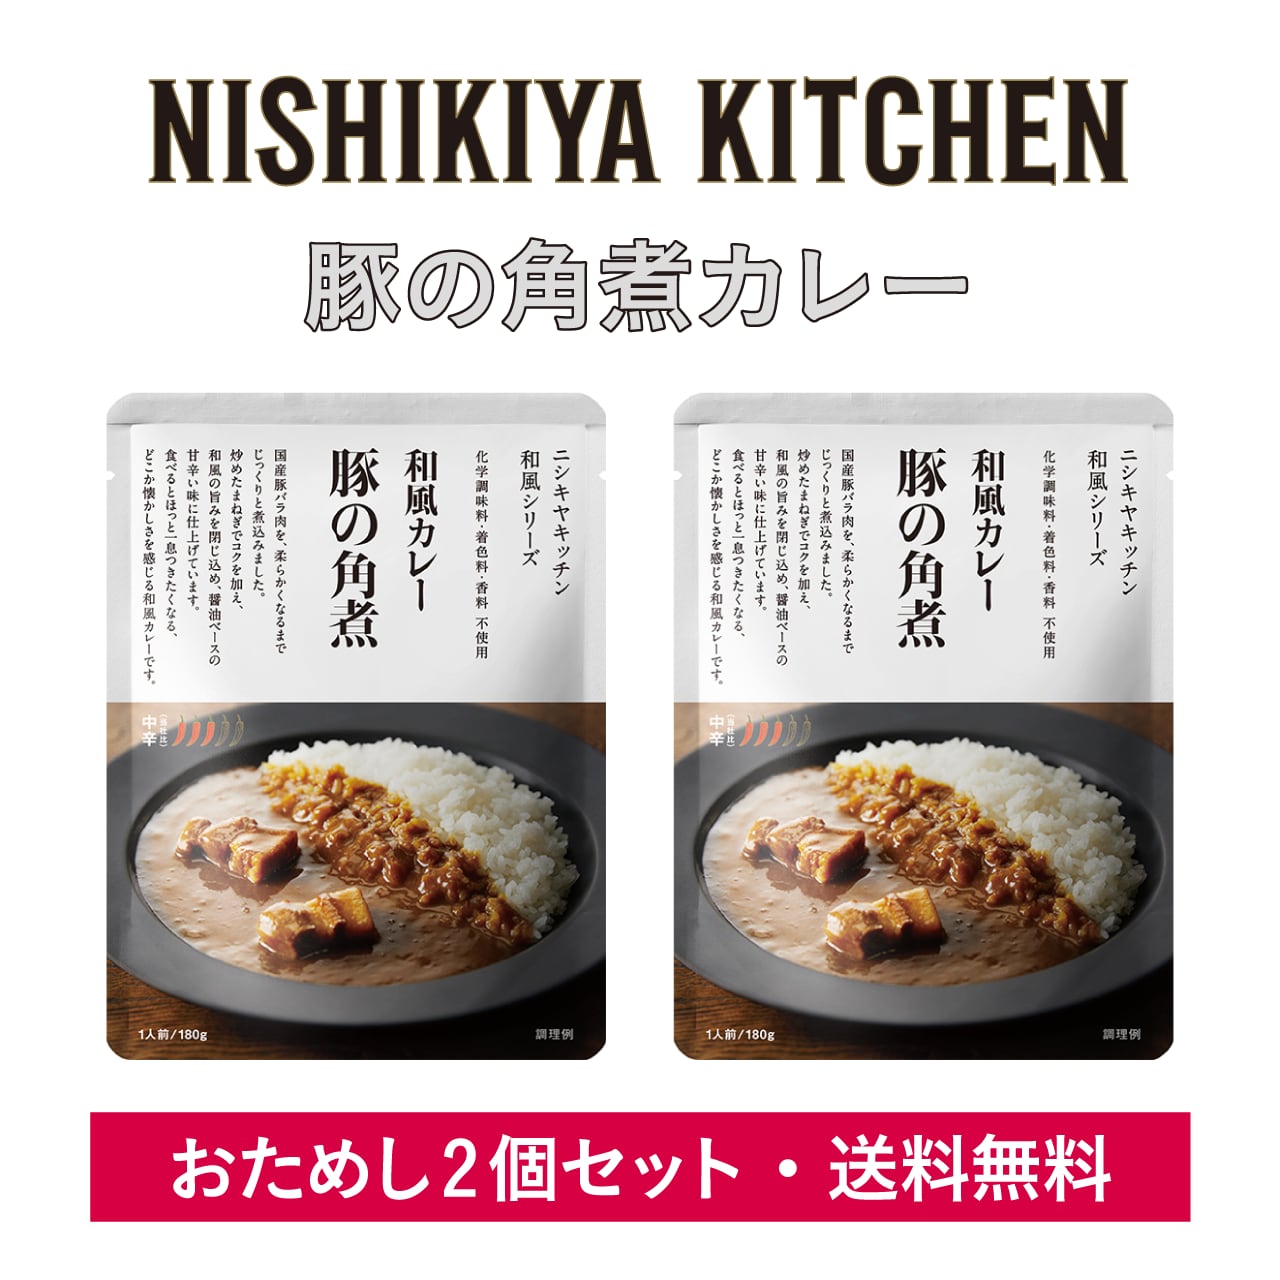 KITCHEN　コドメル通販サイト　2個セット送料無料】豚の角煮カレー　NISHIKIYA